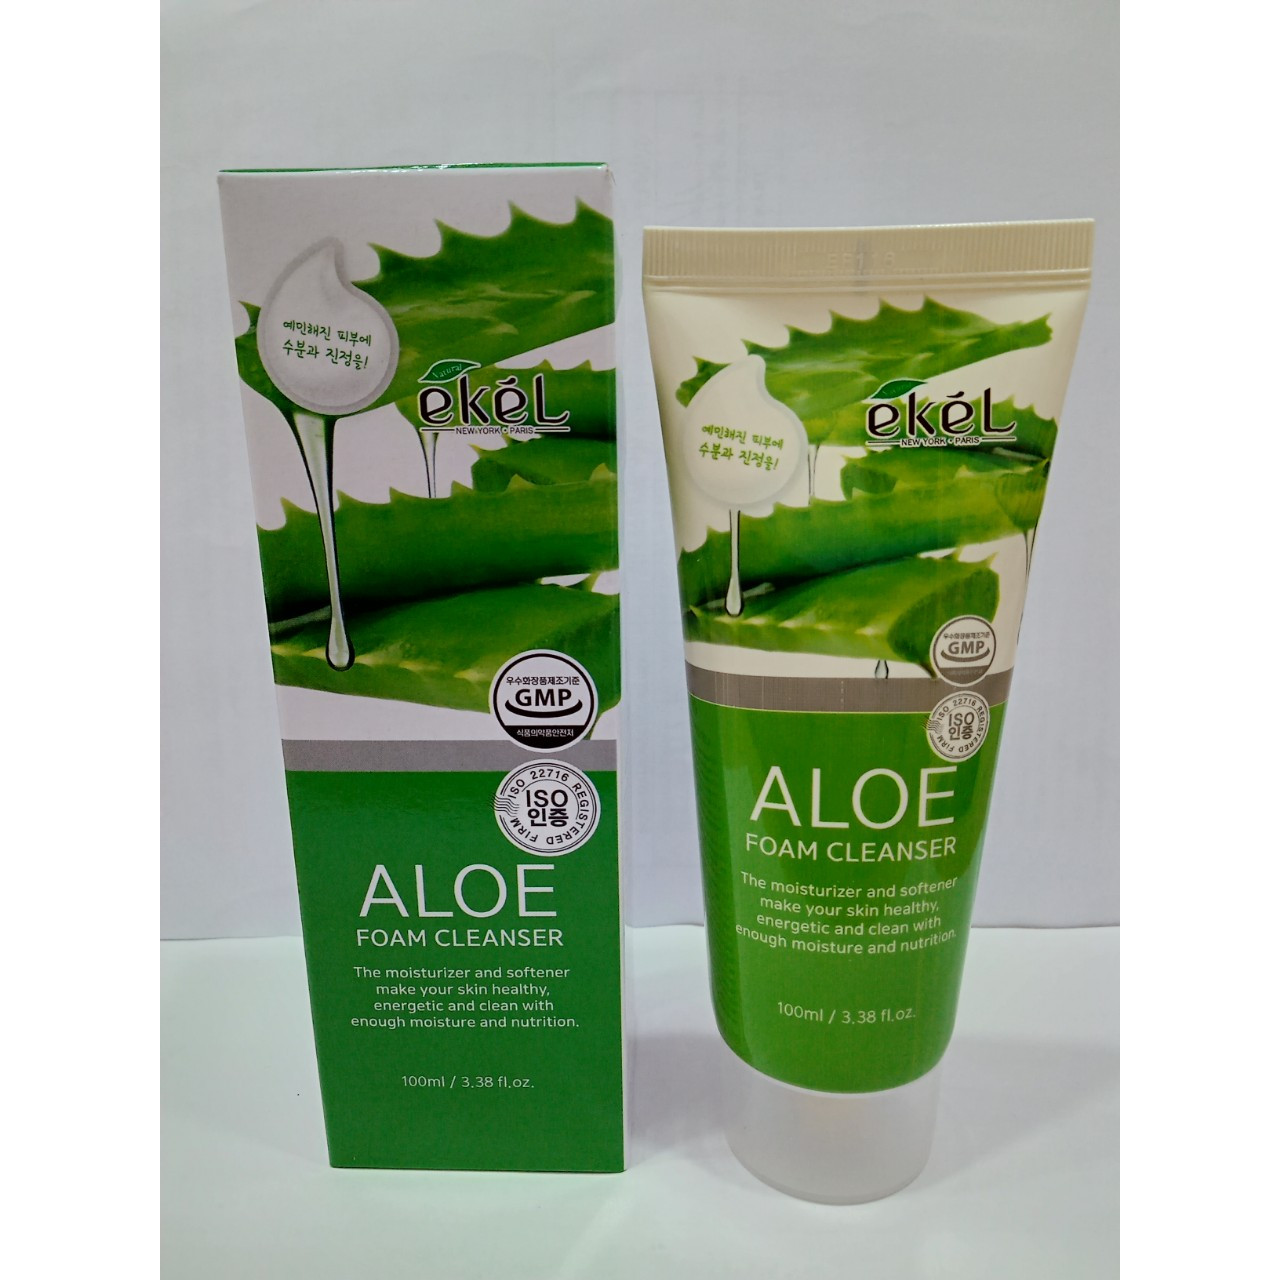 Sữa rửa mặt Nha Đam - Ekel Foam Cleanser Aloe 100ml (Tặng 2 mặt nạ Jant Blanc)